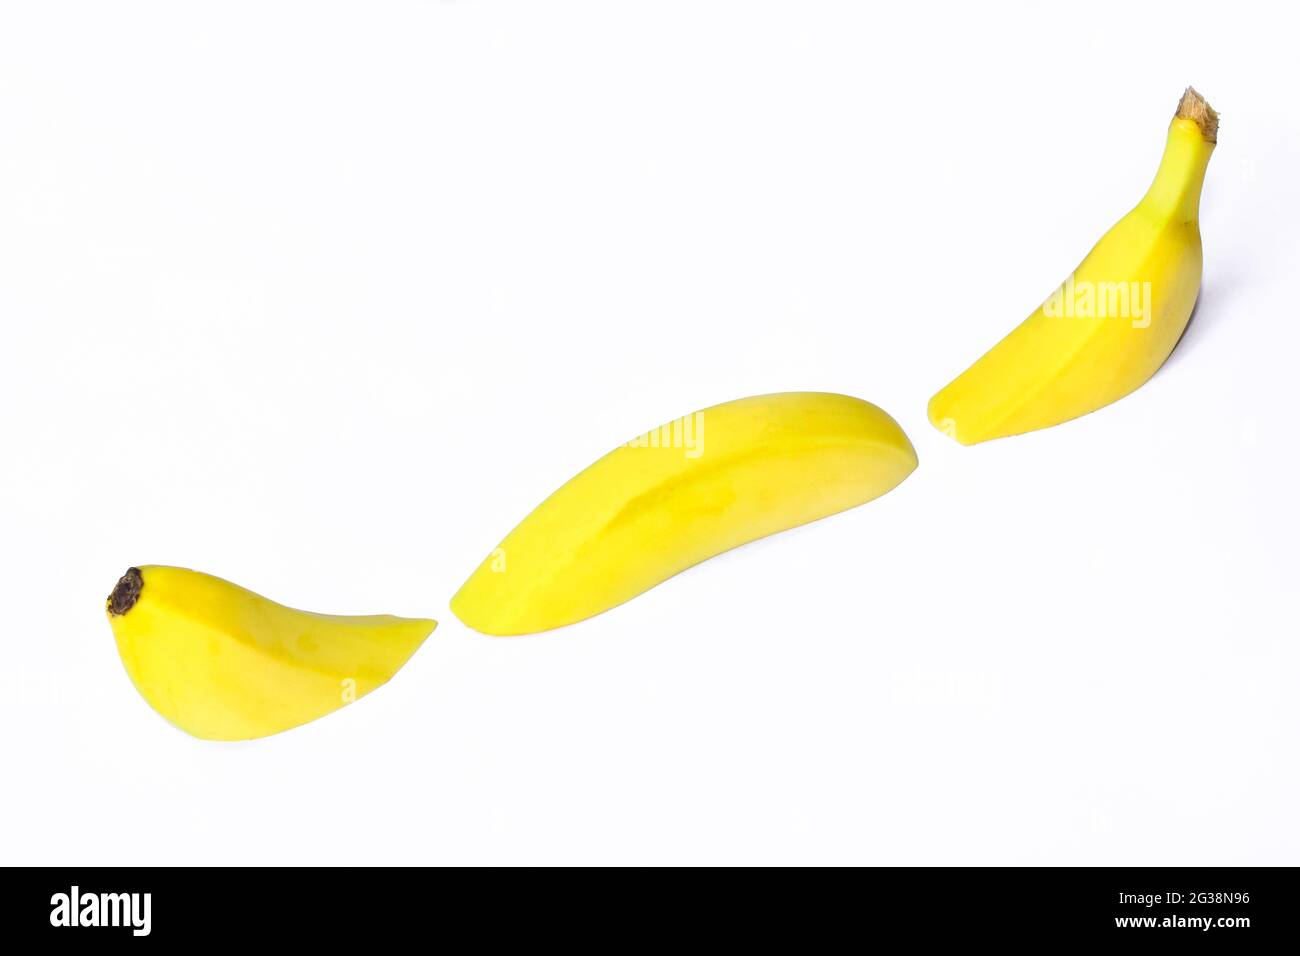 Fruits de banane coupés en trois parties et disposés schématiquement sur un fond blanc d'écrêtage sous forme de ligne courbe Banque D'Images